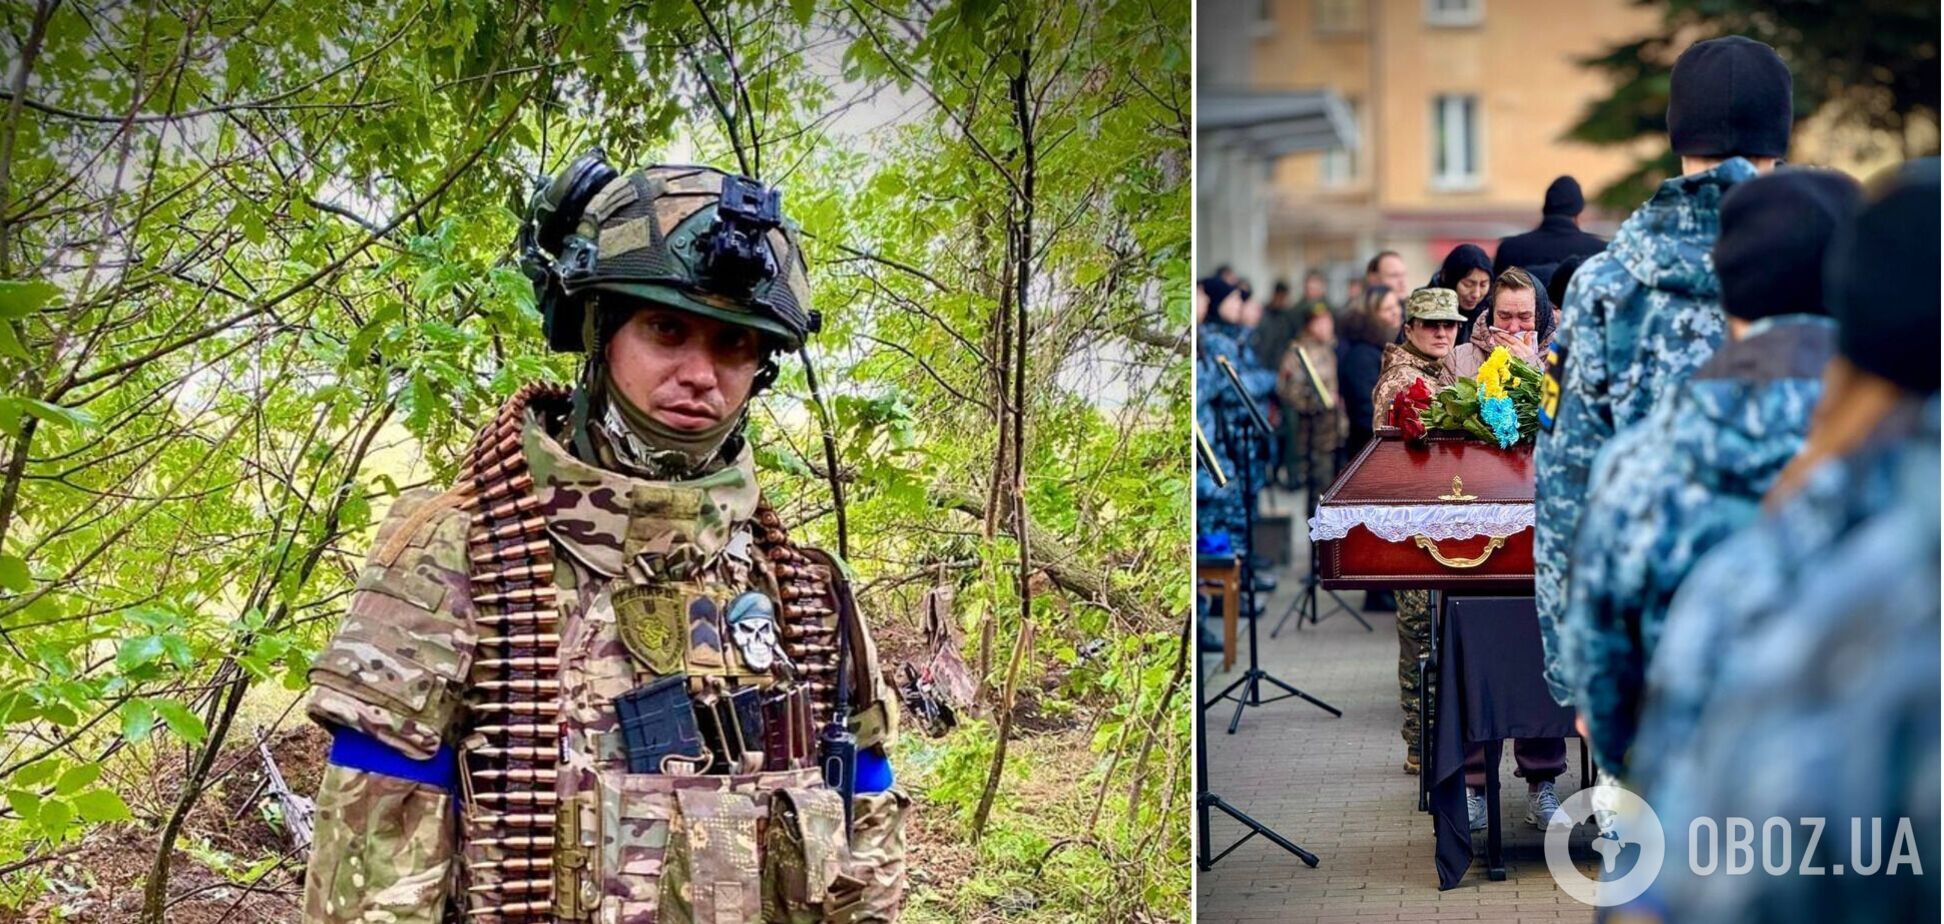 Отдал жизнь за Украину: в Одессе простились с бойцом Нацгвардии, погибшим возле Работино. Фото